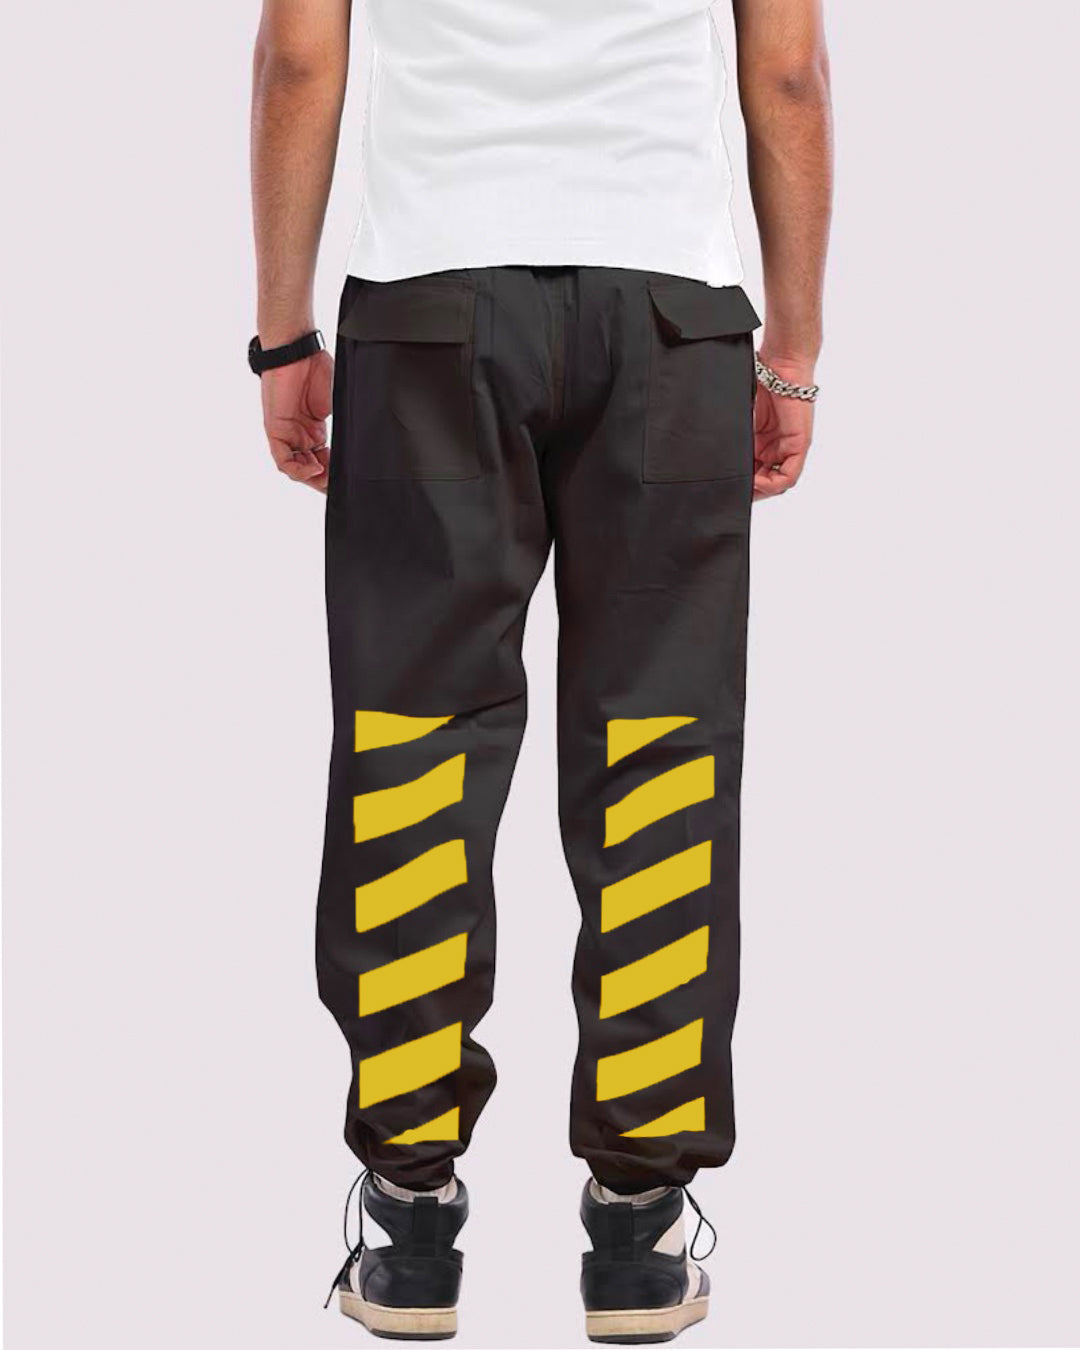 Men's Black Cargo Pants - Yellow Strip